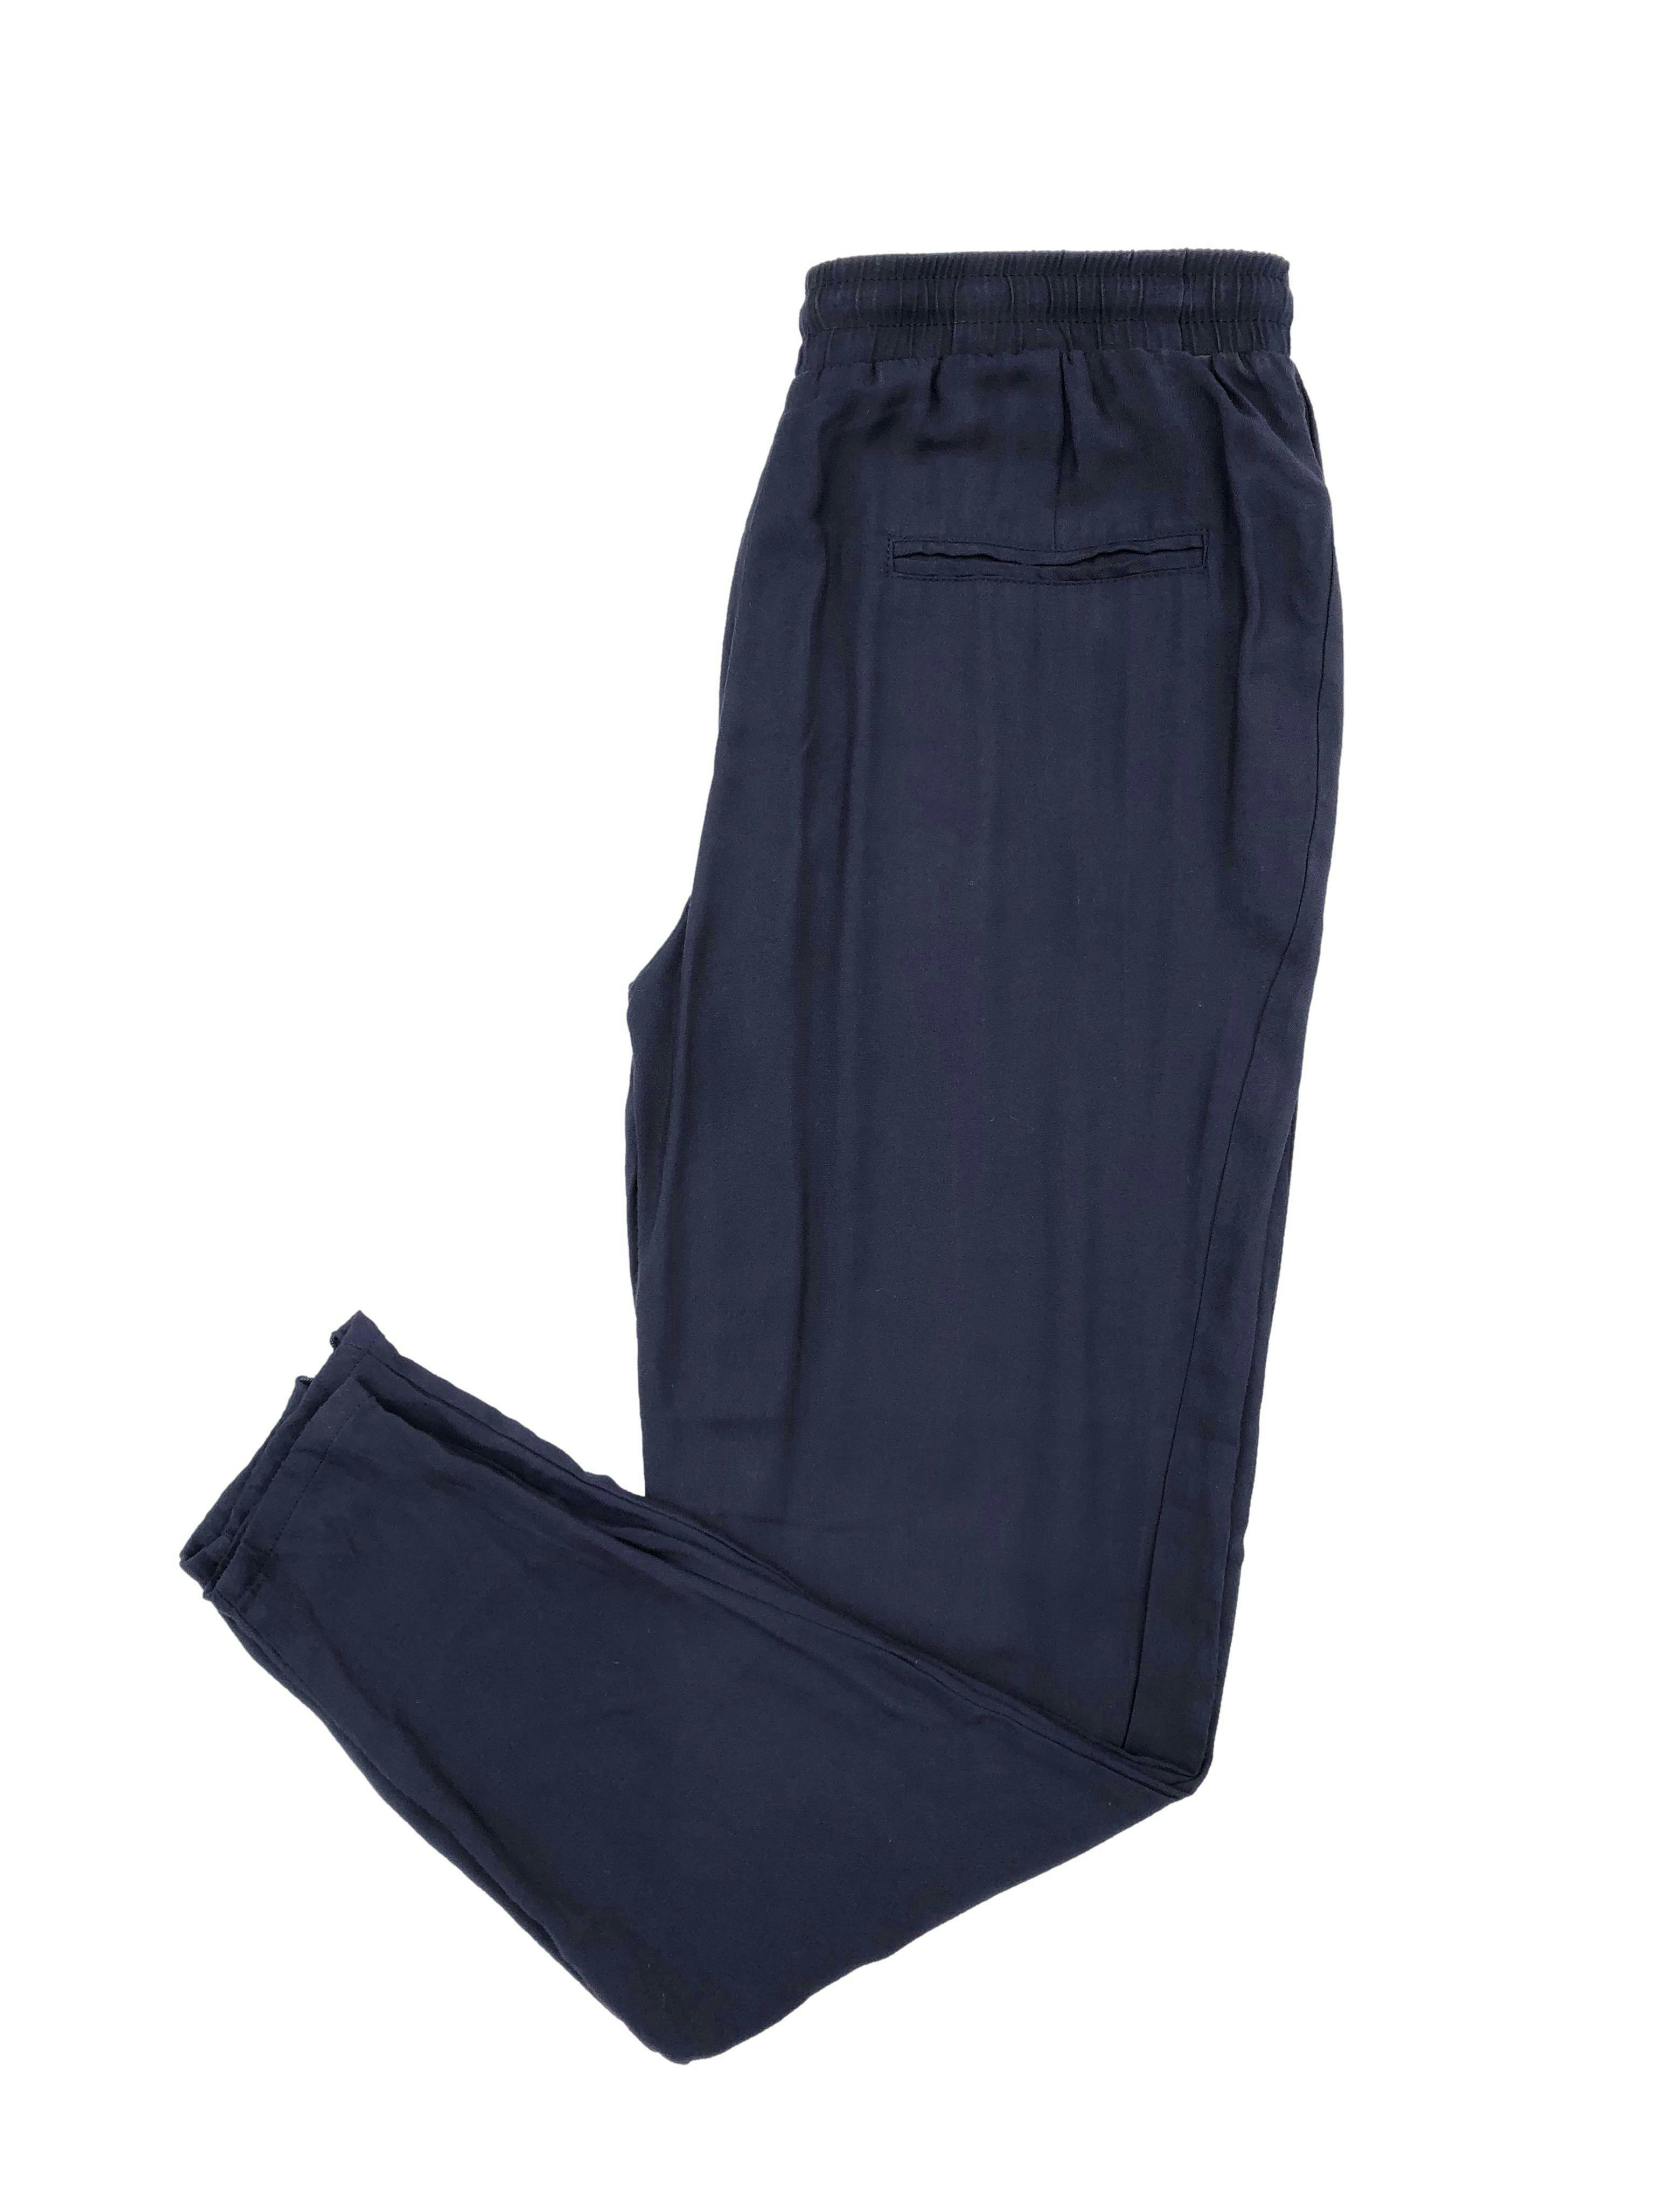 Pantalón Mango azul de tela fresca tipo chalis, pretina elástica regulables, bolsillos laterales y cierre en la basta. Cintura 72cm Tiro 27cm Largo 92cm